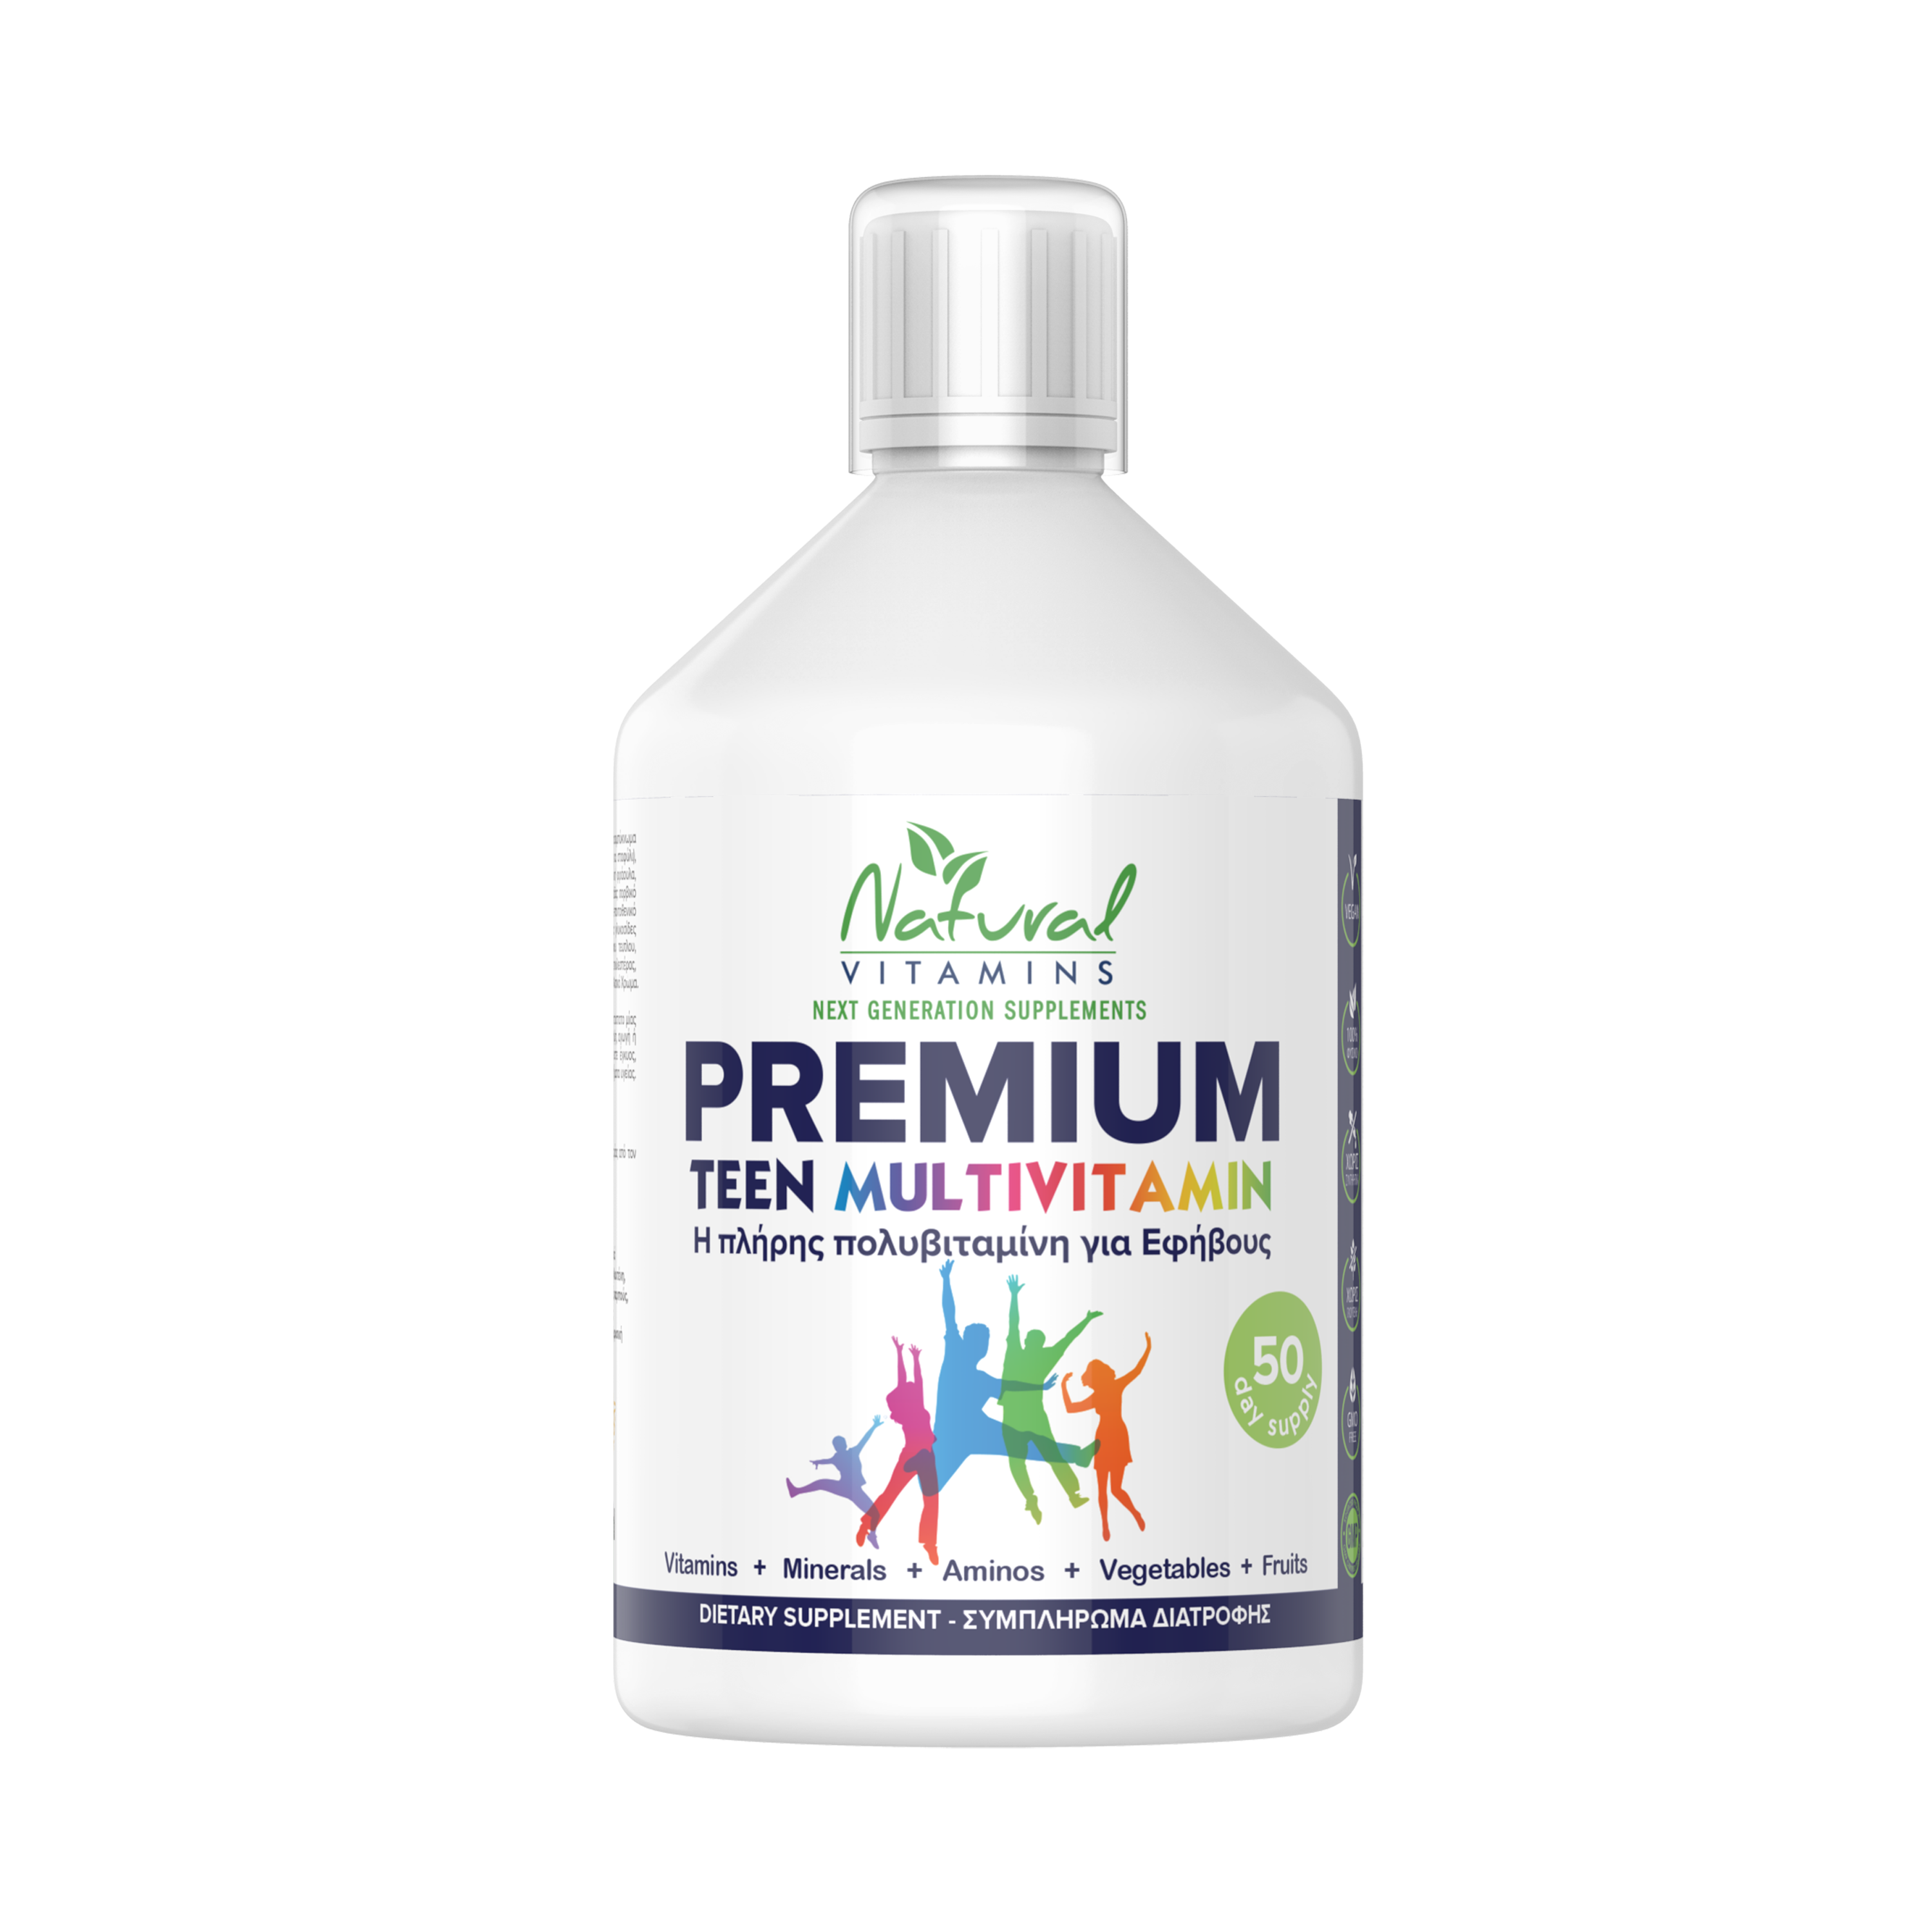 Premium Teen Multivitamin